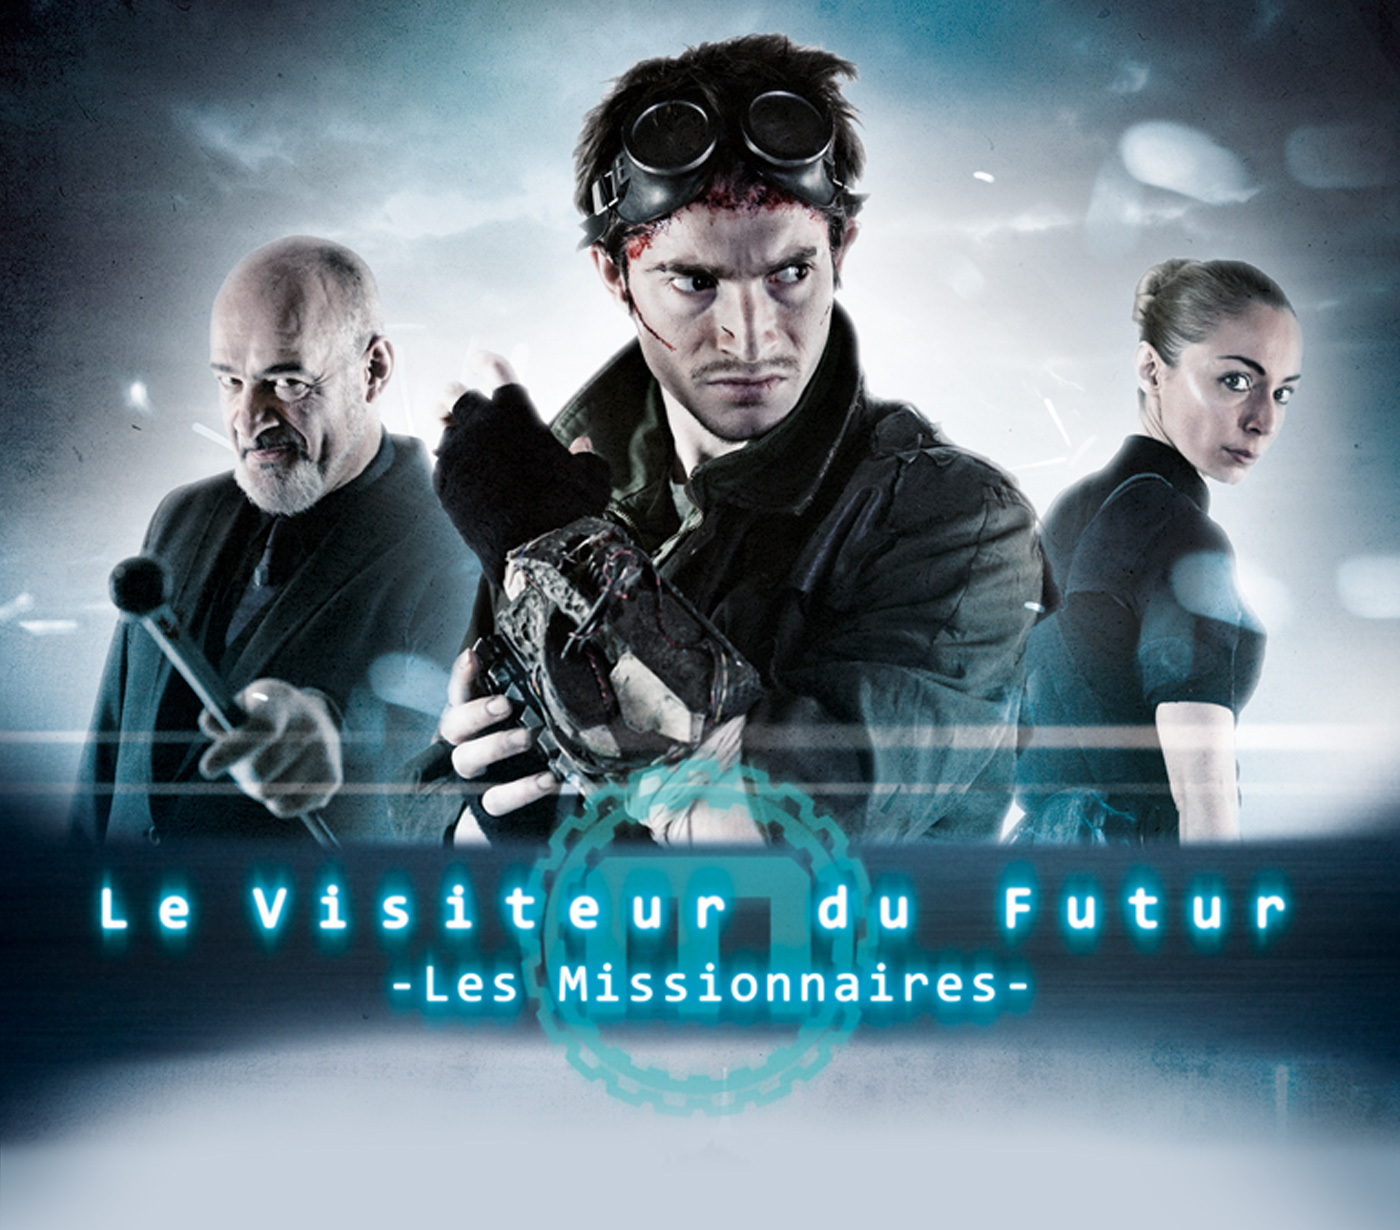 VDF science fiction DVD digipack Frenchnerd